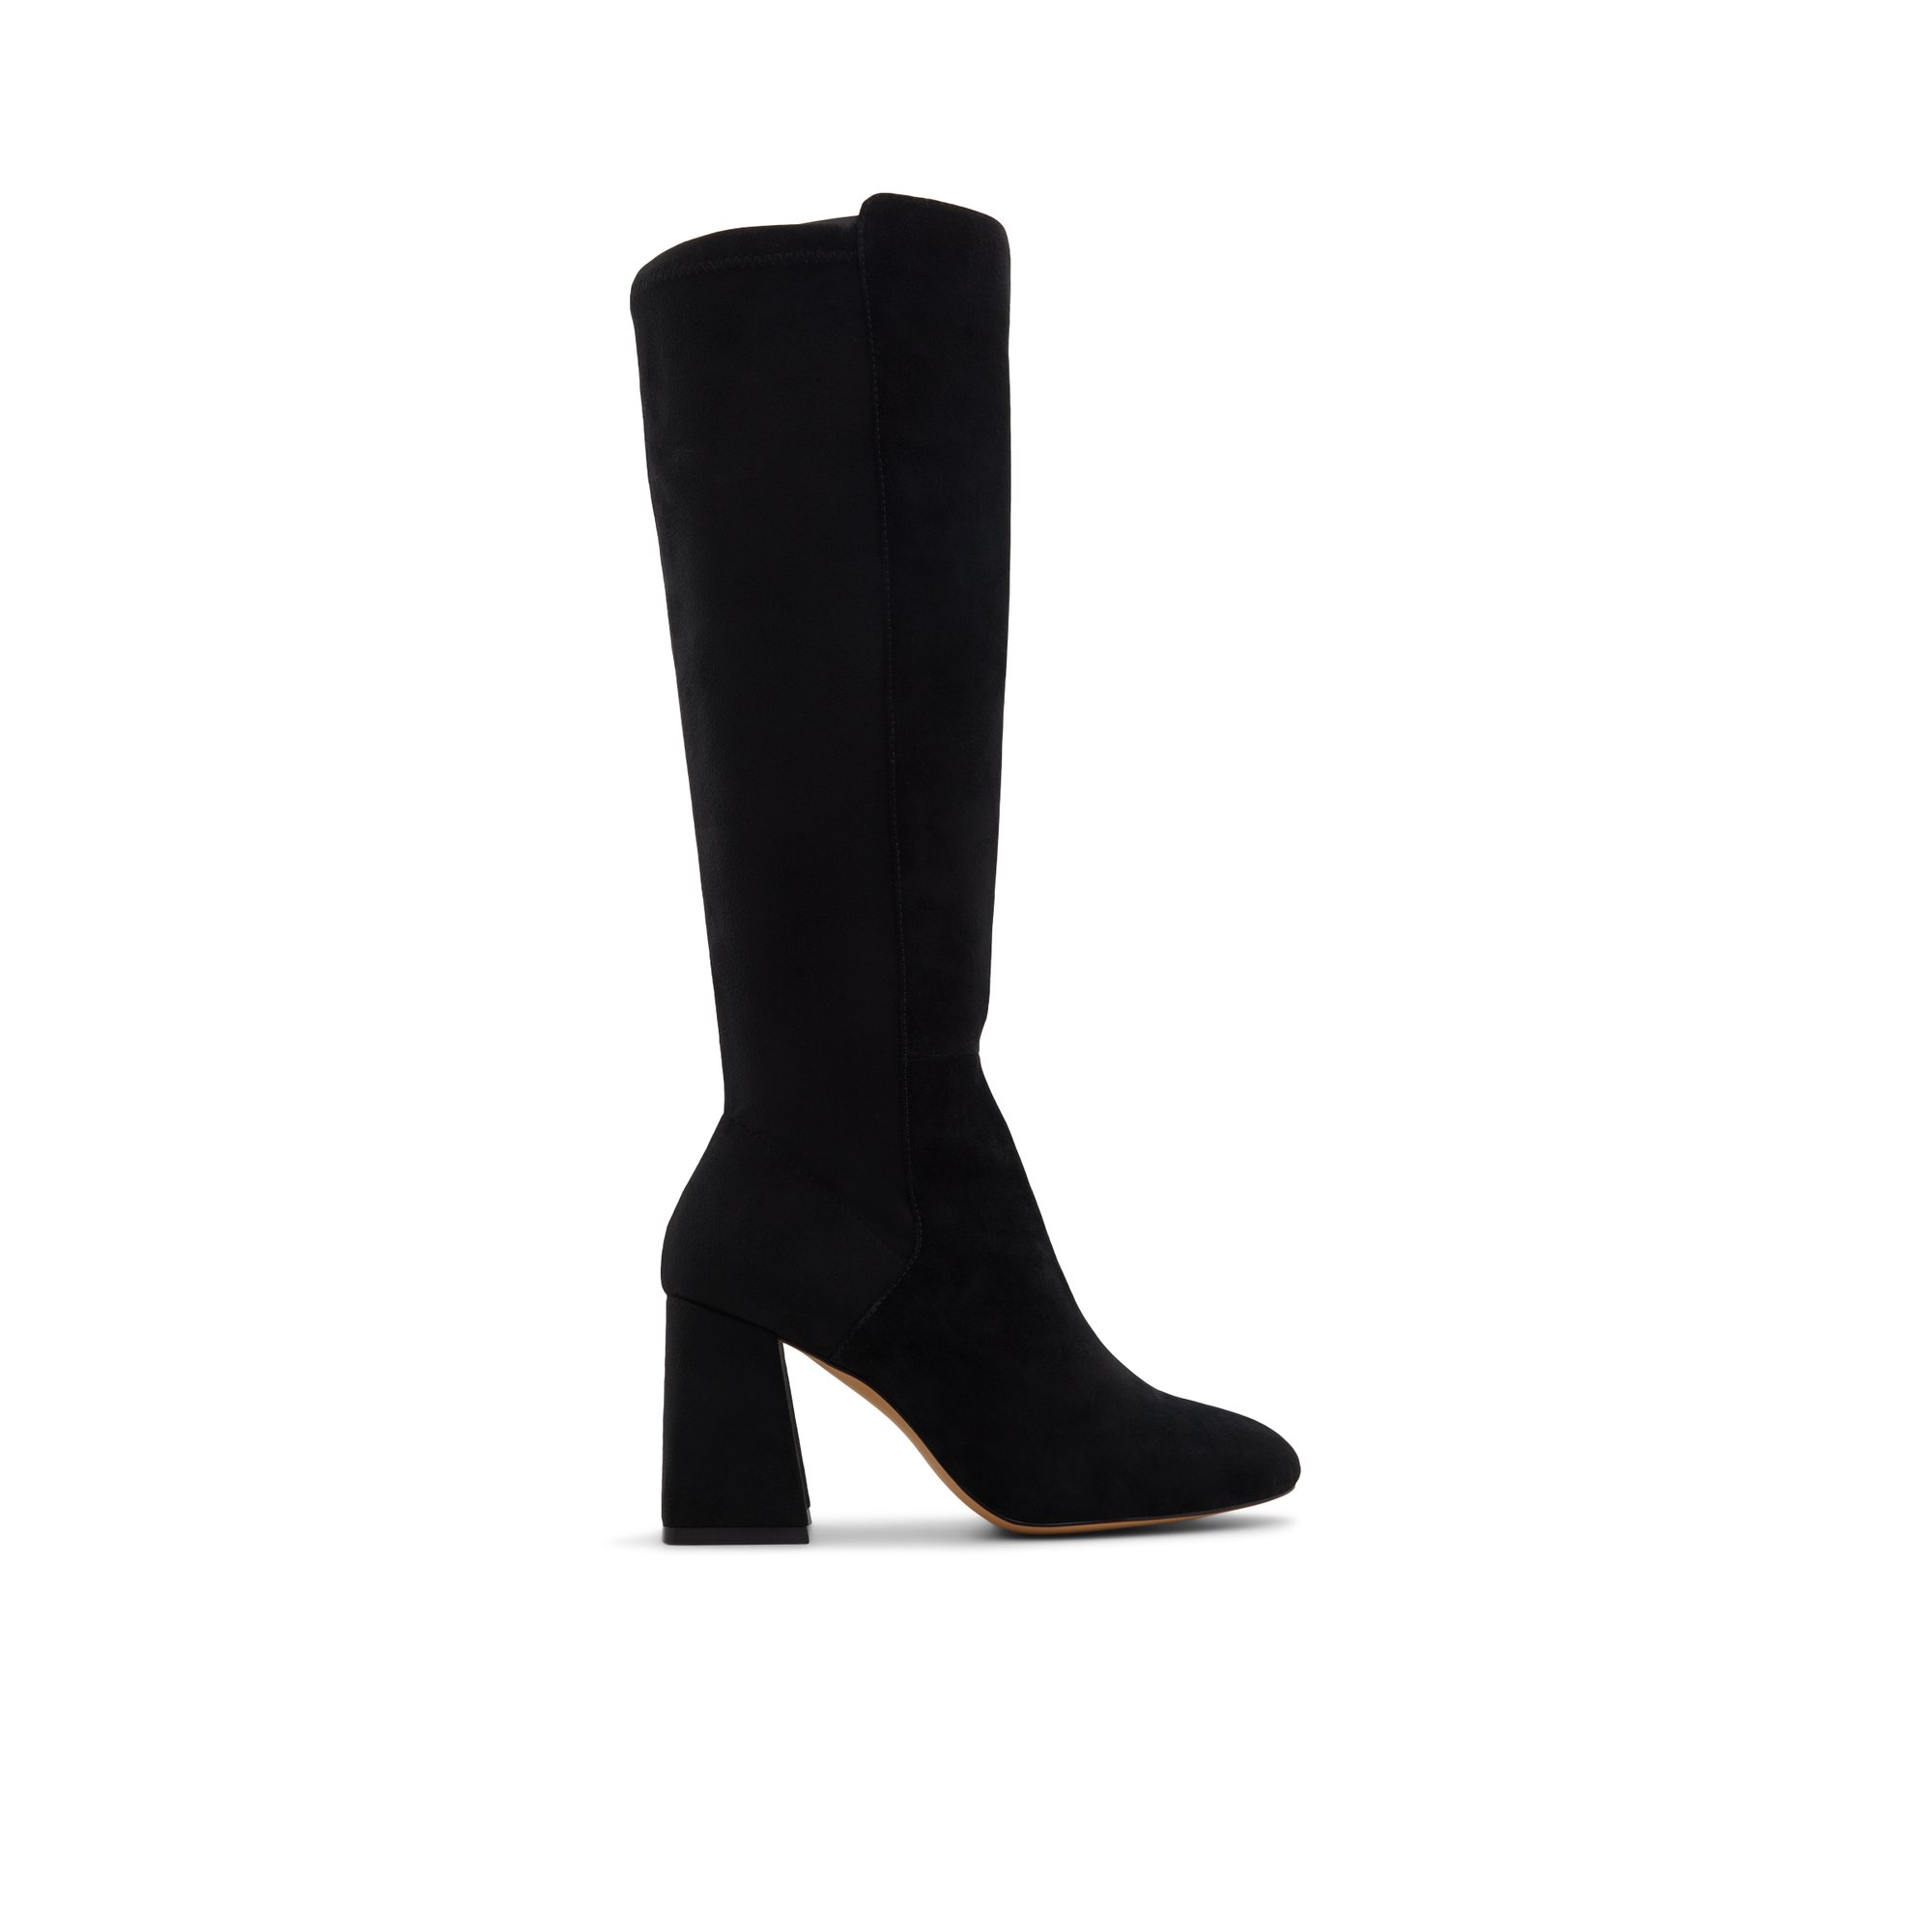 ALDO Alodenaryn - Women's Boots Dress - Black